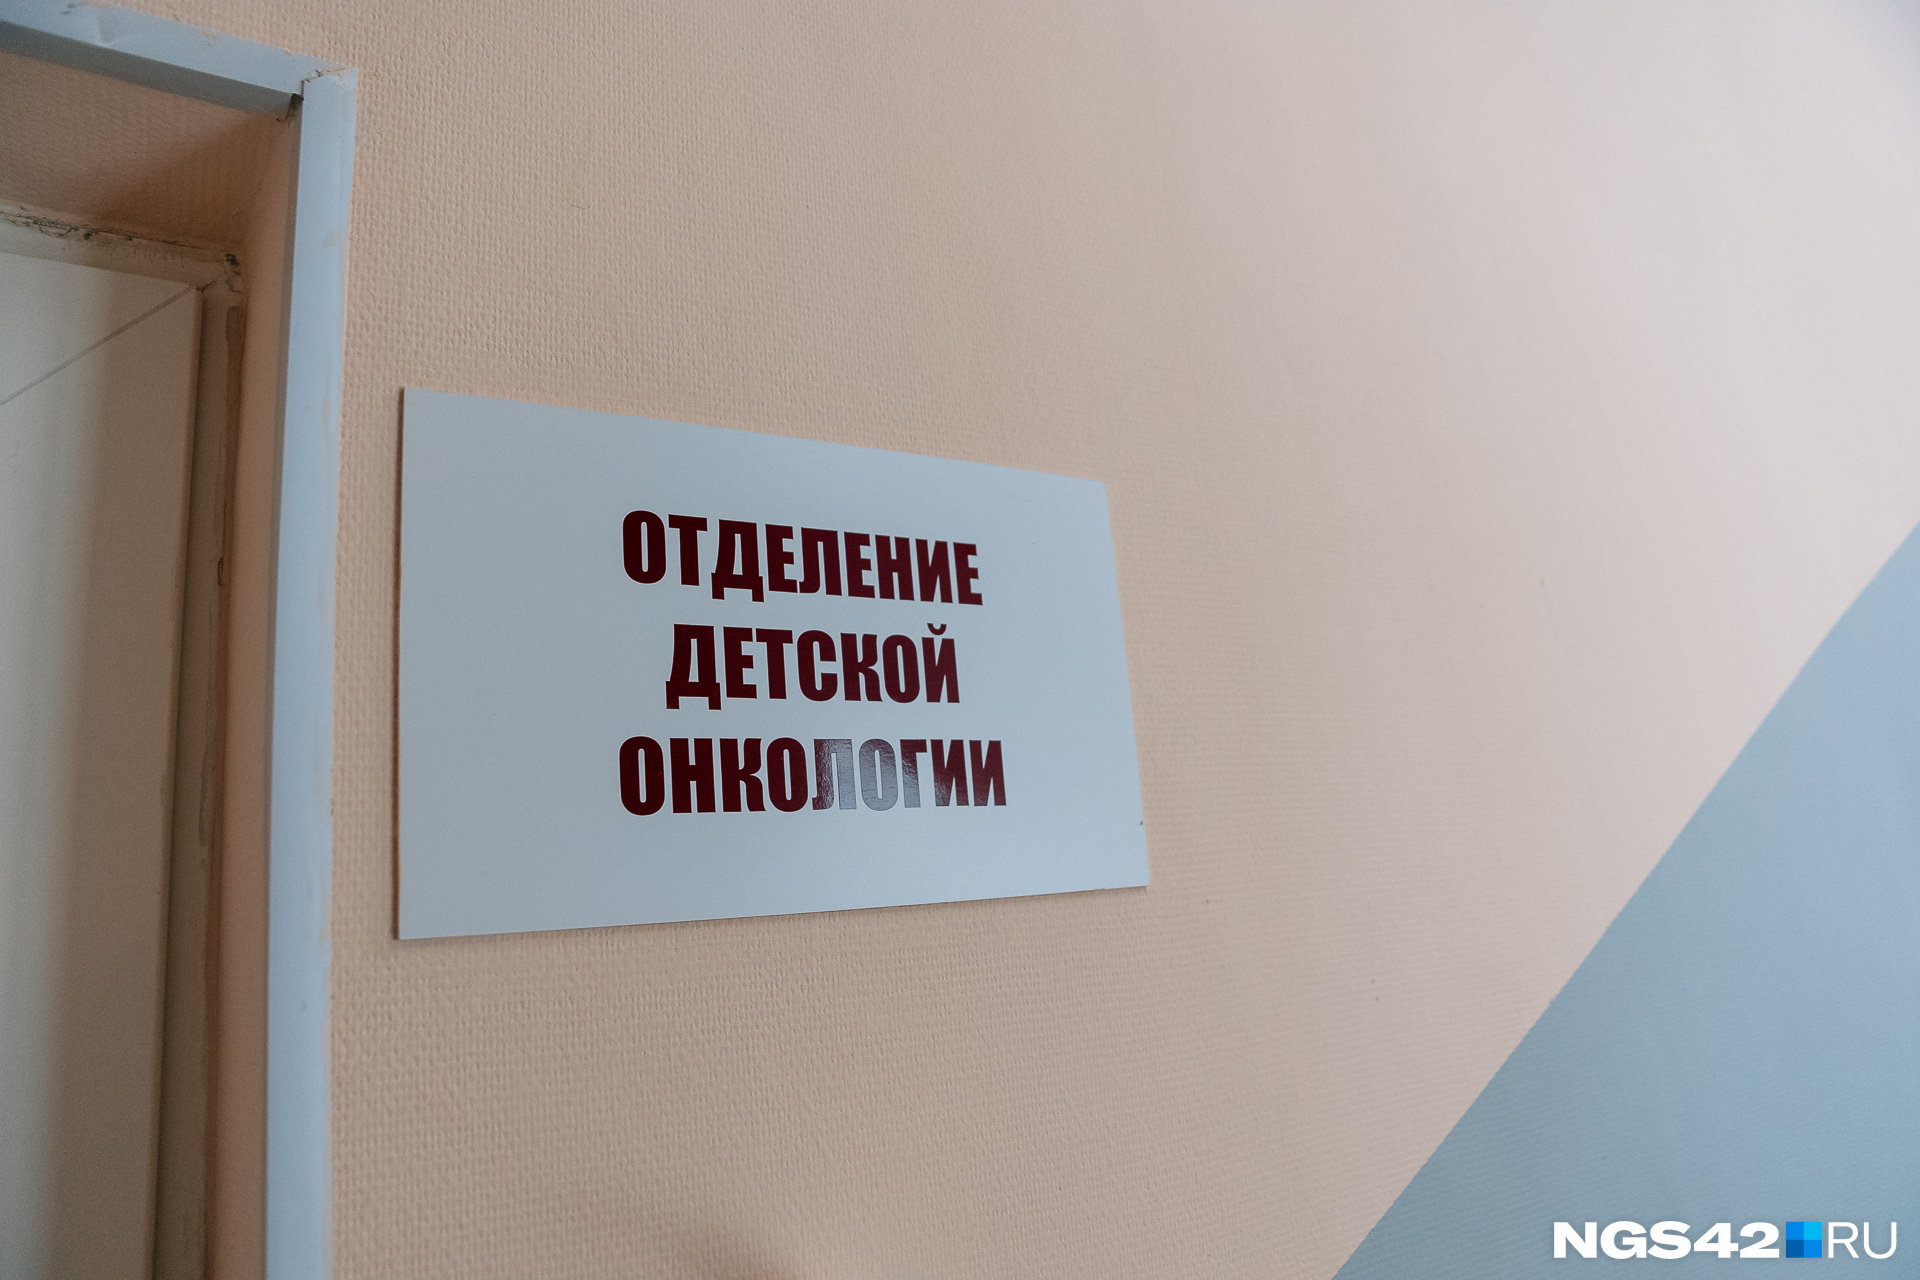 Кузбасский онкодиспансер опроверг закрытие детского отделения